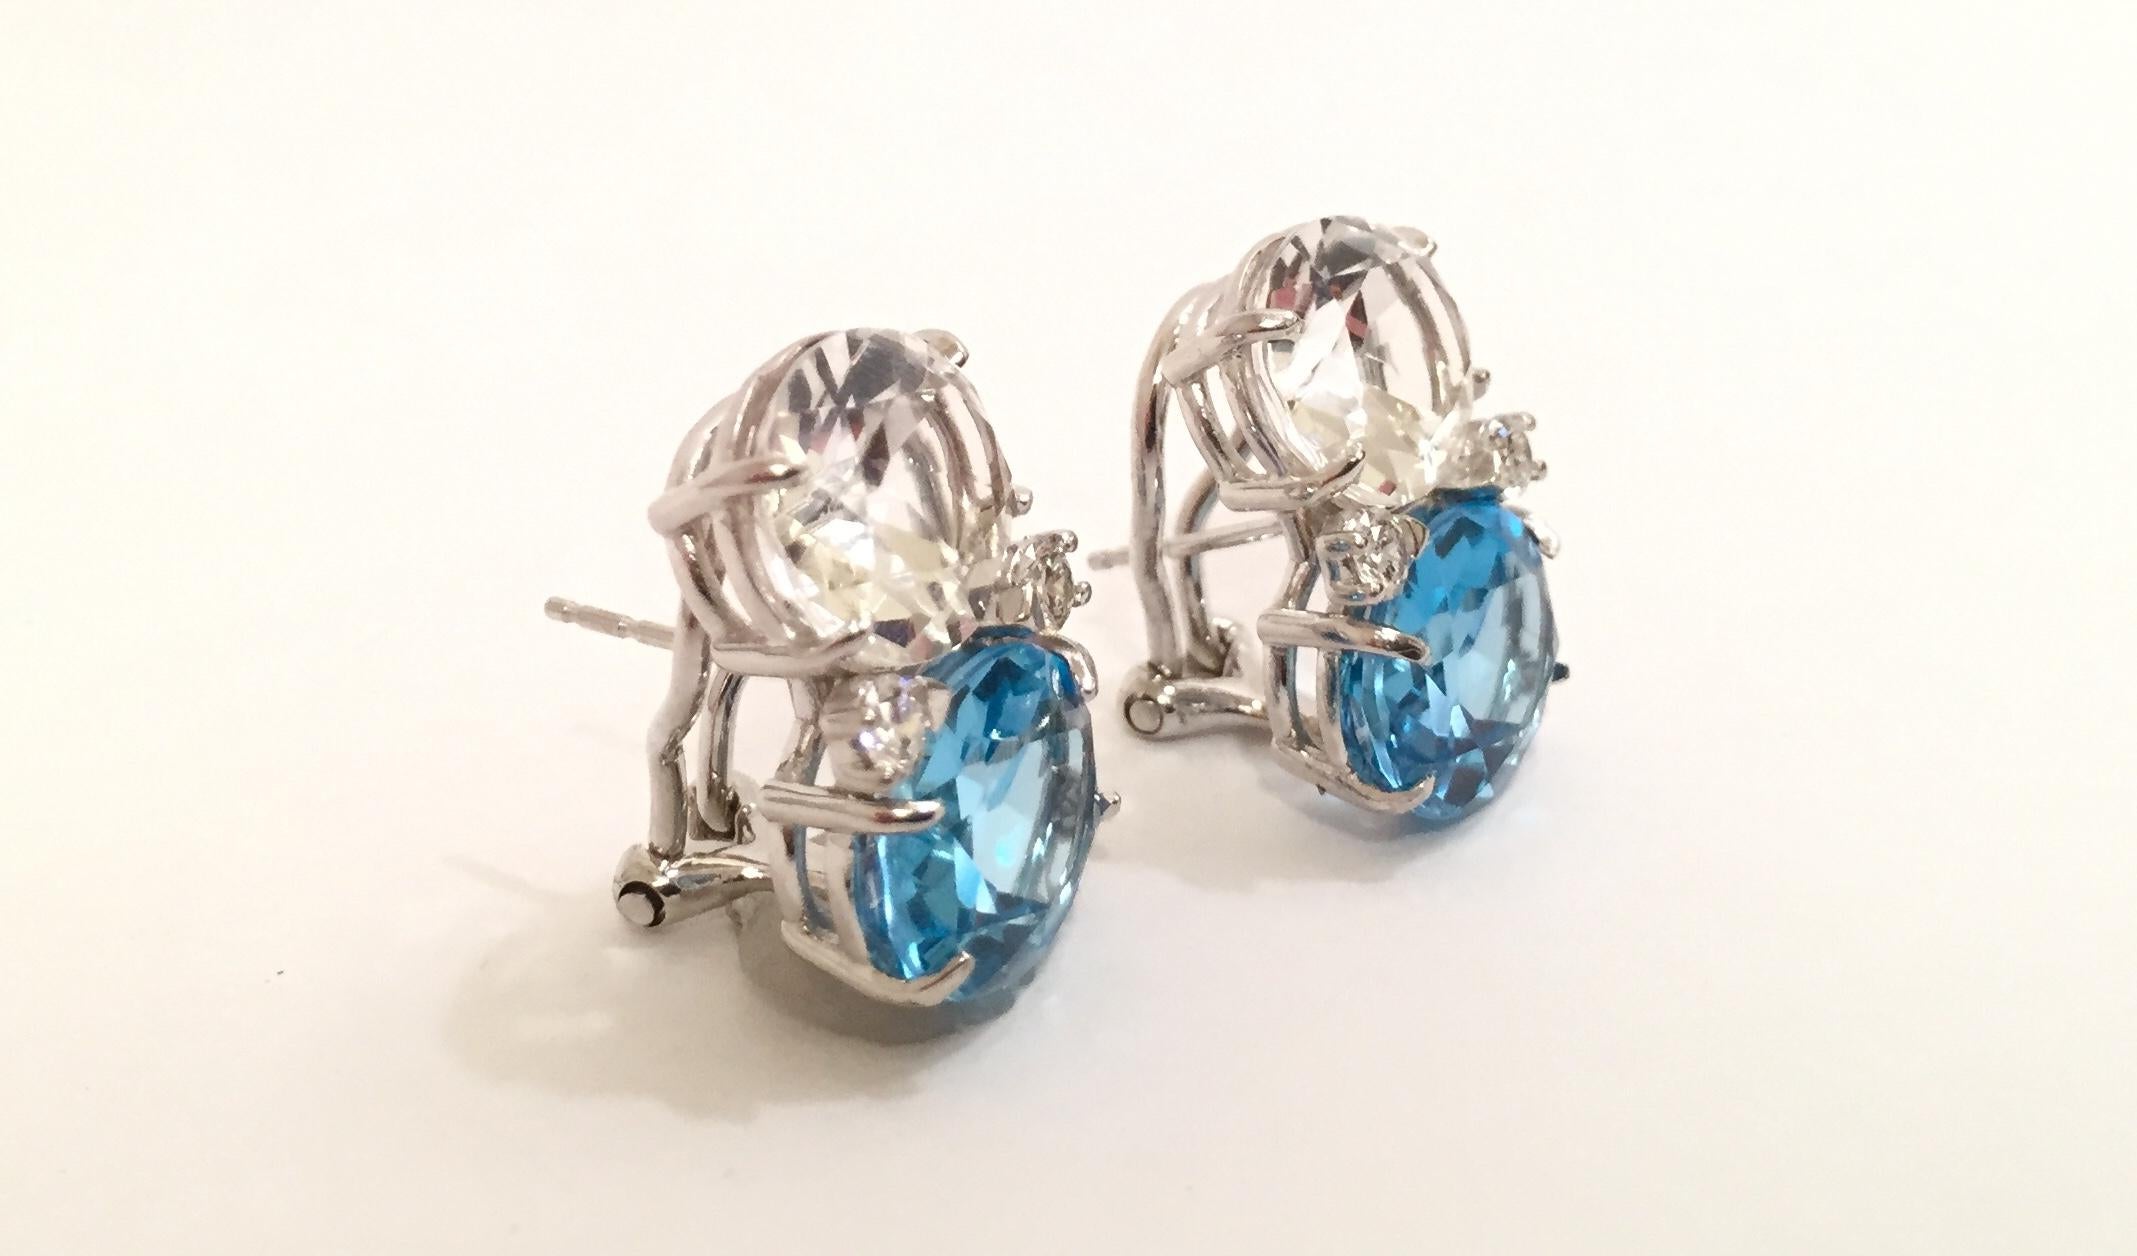 18kt Medium White Gold GUM DROP™ Ohrringe mit Bergkristall und blauem Topas und vier Diamanten.

Die mittelgroßen GUM DROP™-Ohrringe aus 18-karätigem Weißgold enthalten einen facettierten ovalen Bergkristall (je ca. 2,5 ct) und einen blauen Topas